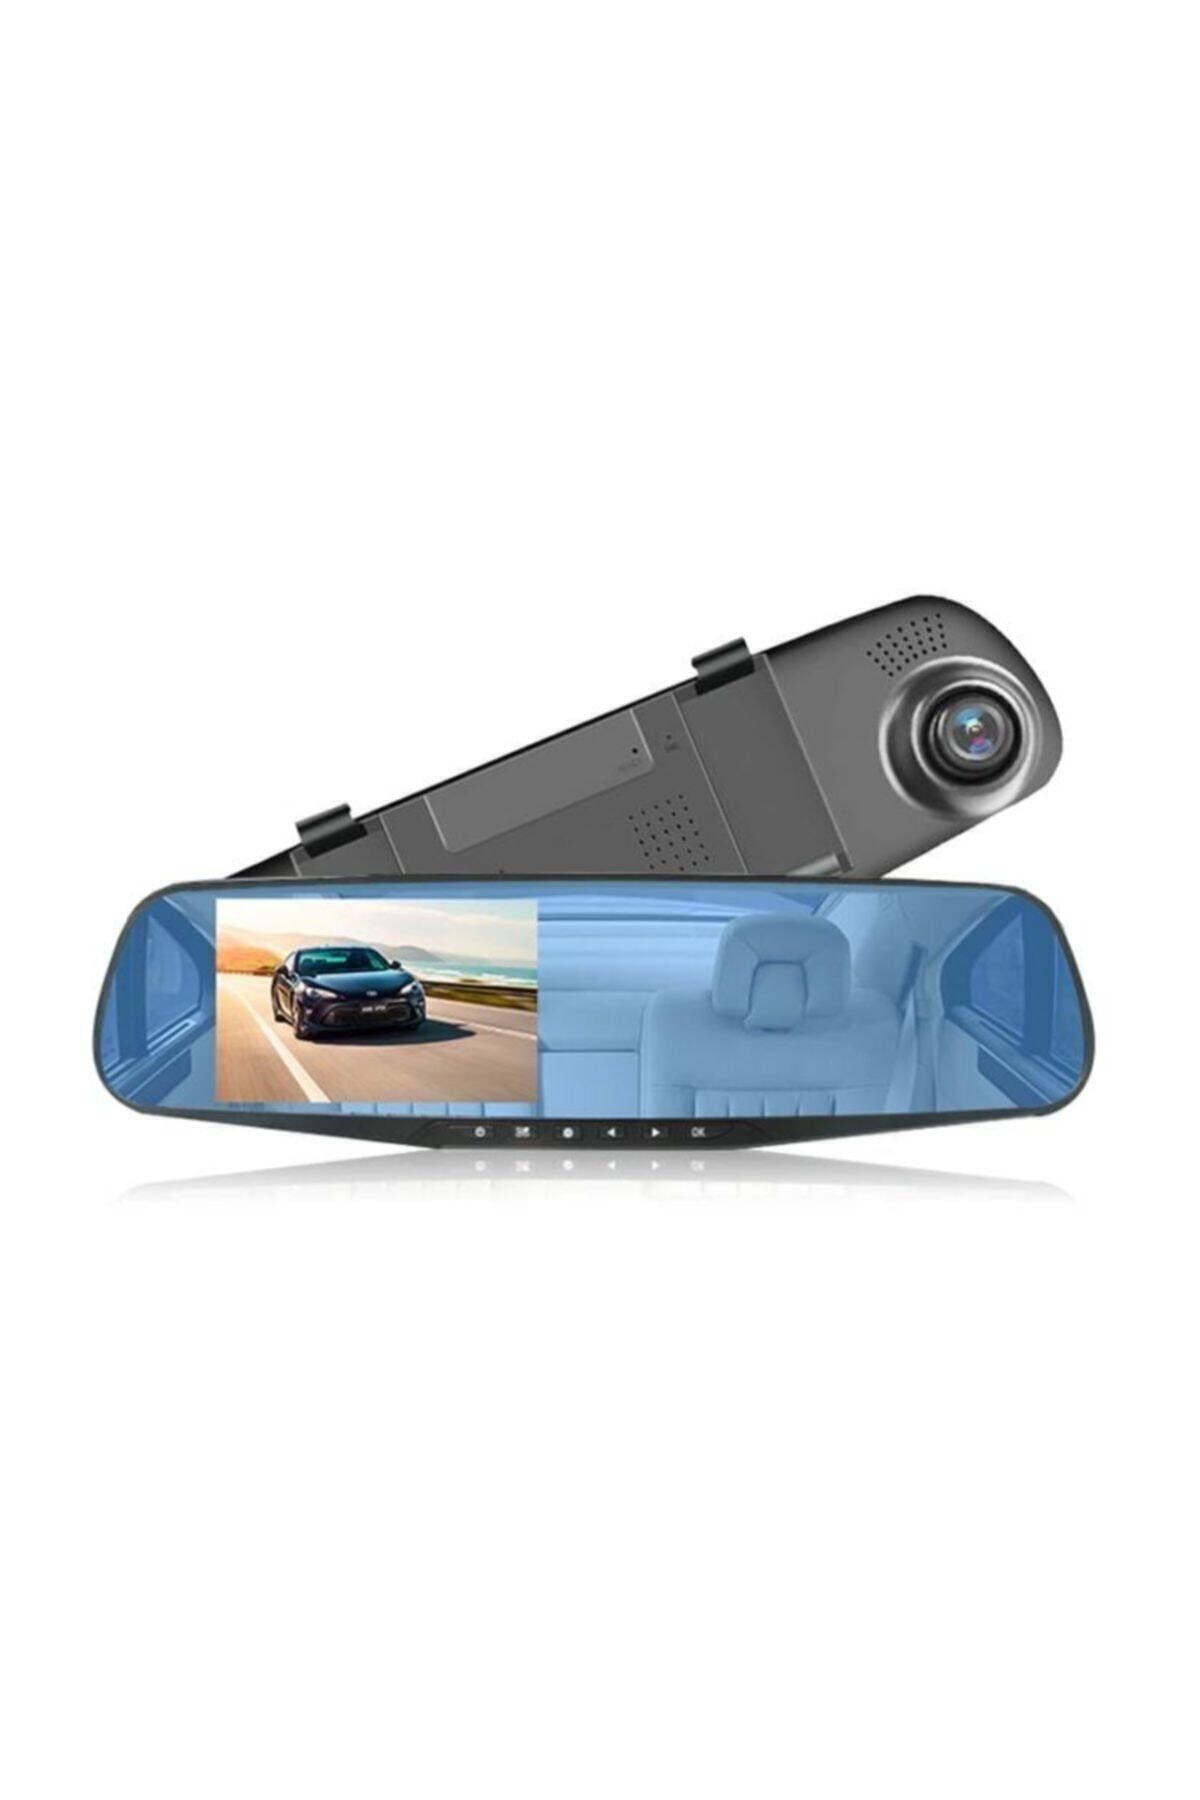 Gomax Kameralı Dikiz Aynası Geri Görüş Kameralı Park Sensörü 1080p Dikiz